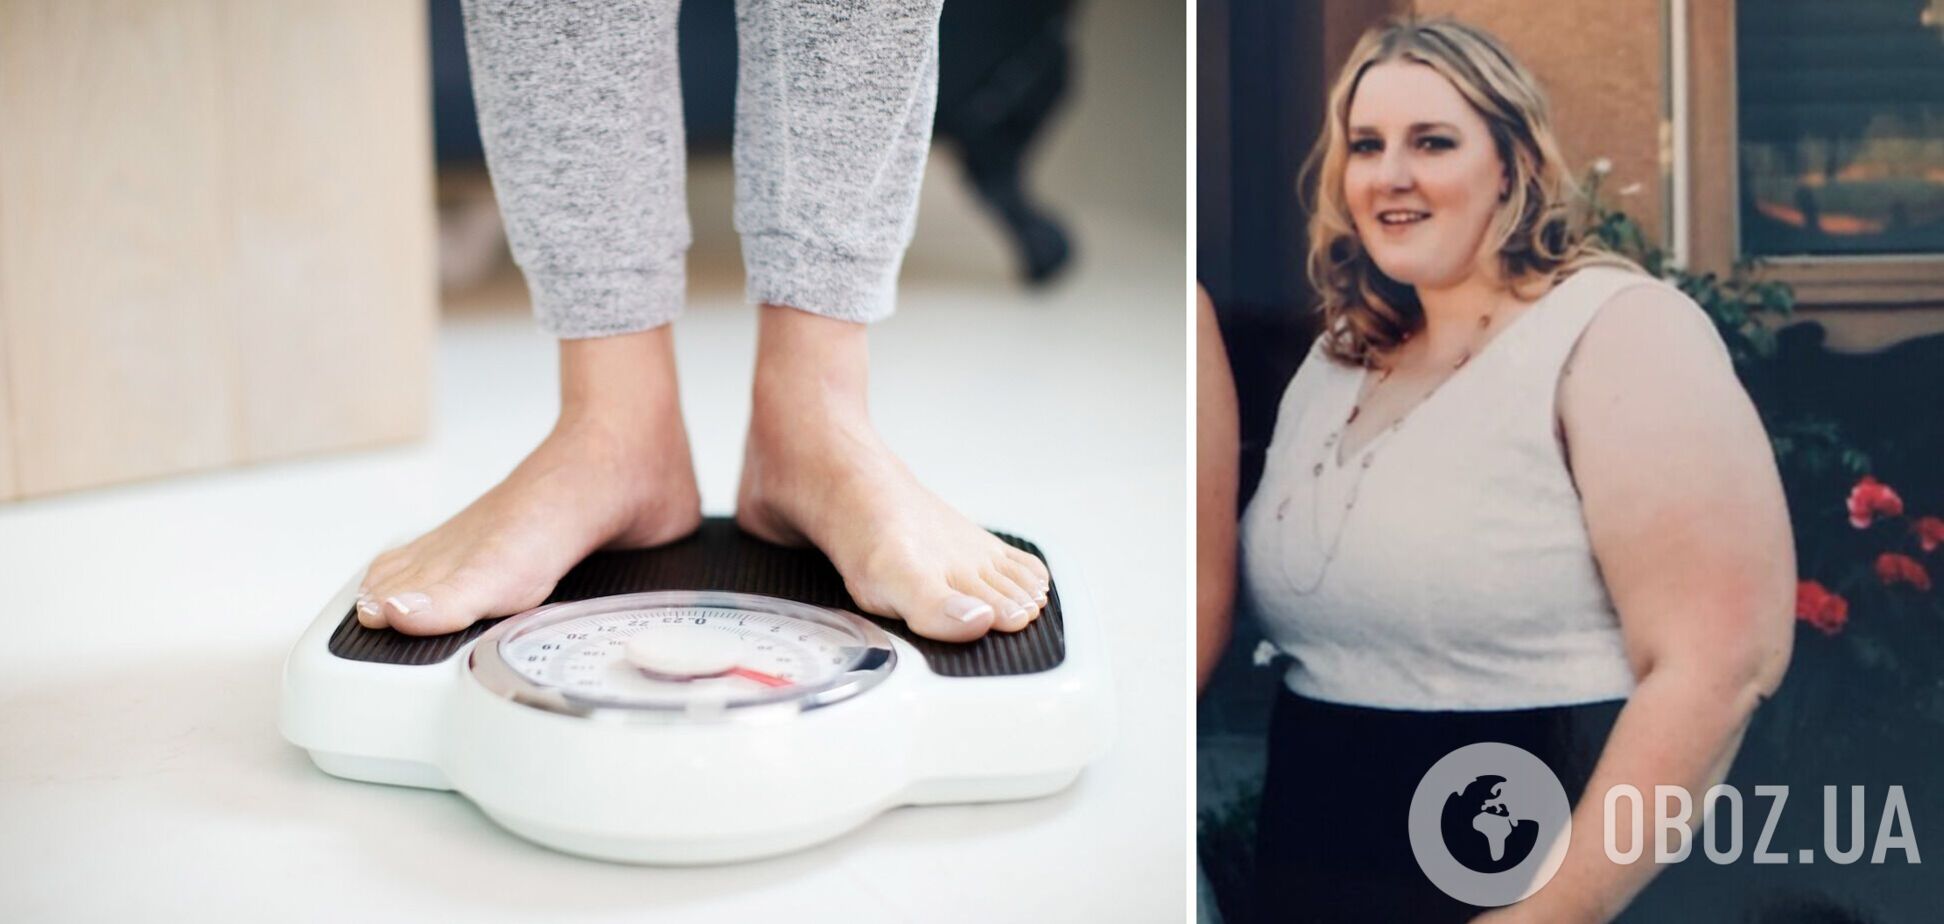 33-річна американка скинула майже 70 кг і поділилася секретом схуднення